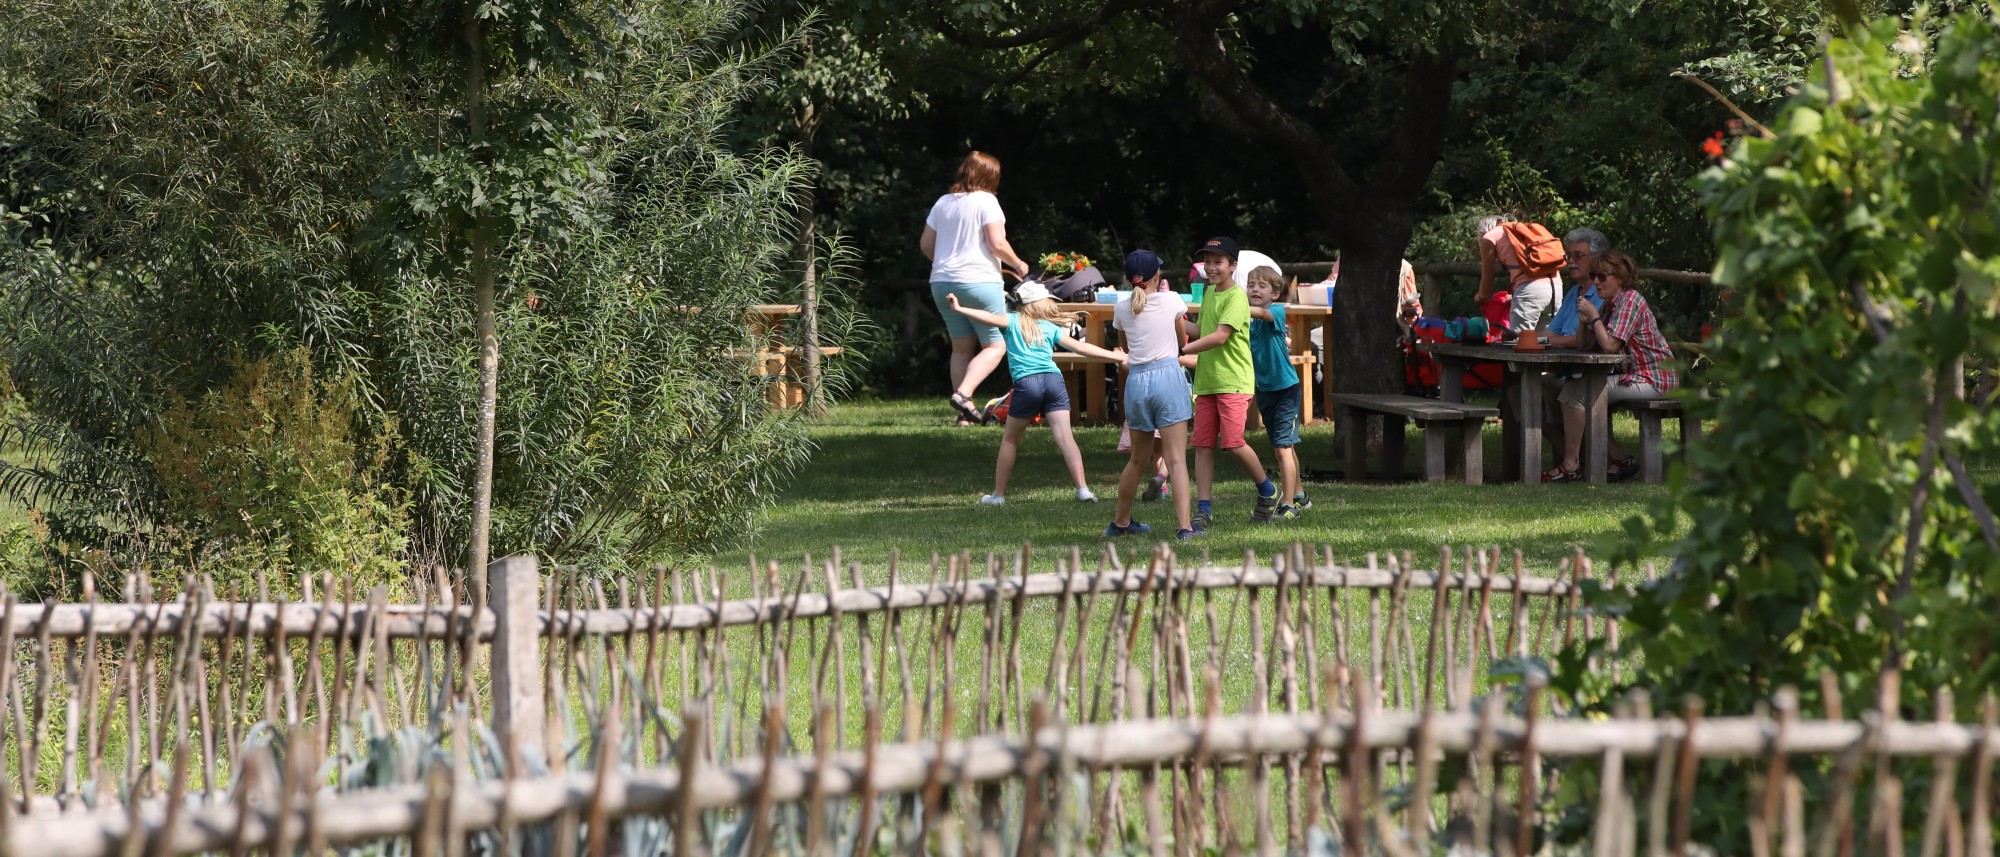 Familien mit Kindern pausieren und spielen an Picknickplatz im Grünen